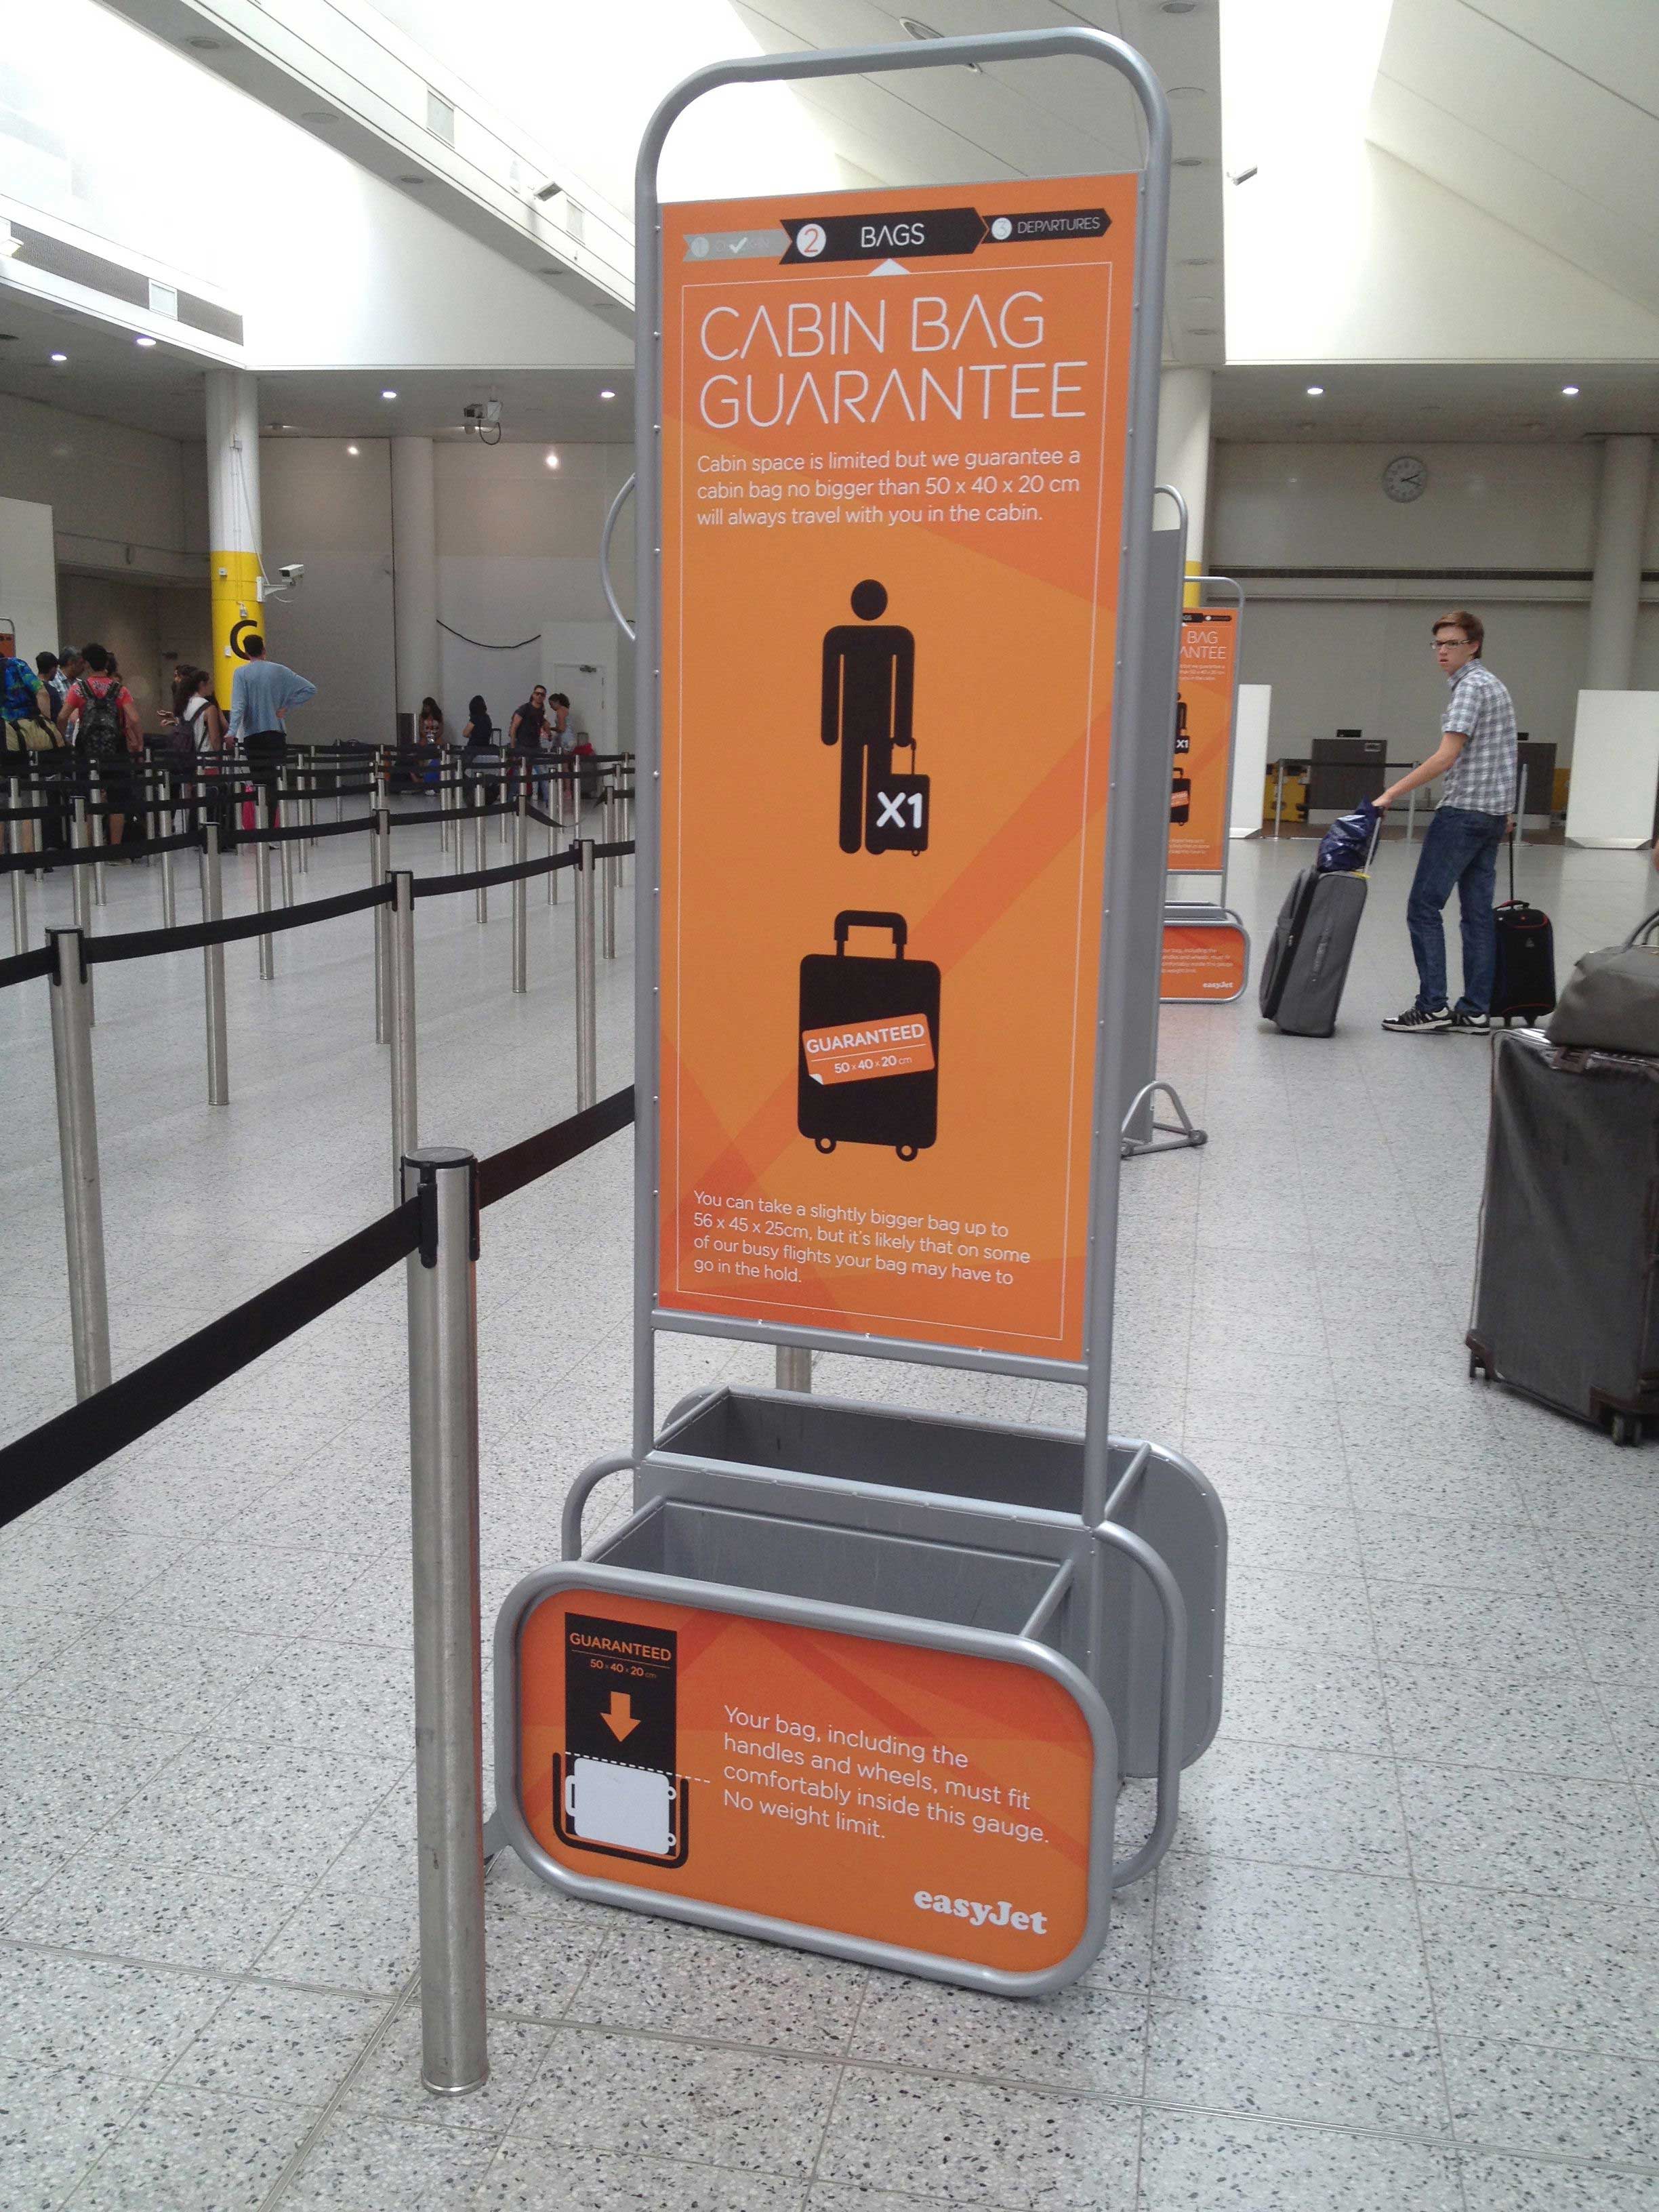 Tamanho de bagagens da EasyJet/ Crédito foto: http://heathrow-airport-our-guide.com/news/easyjet-hand-luggage-allowances-changed/